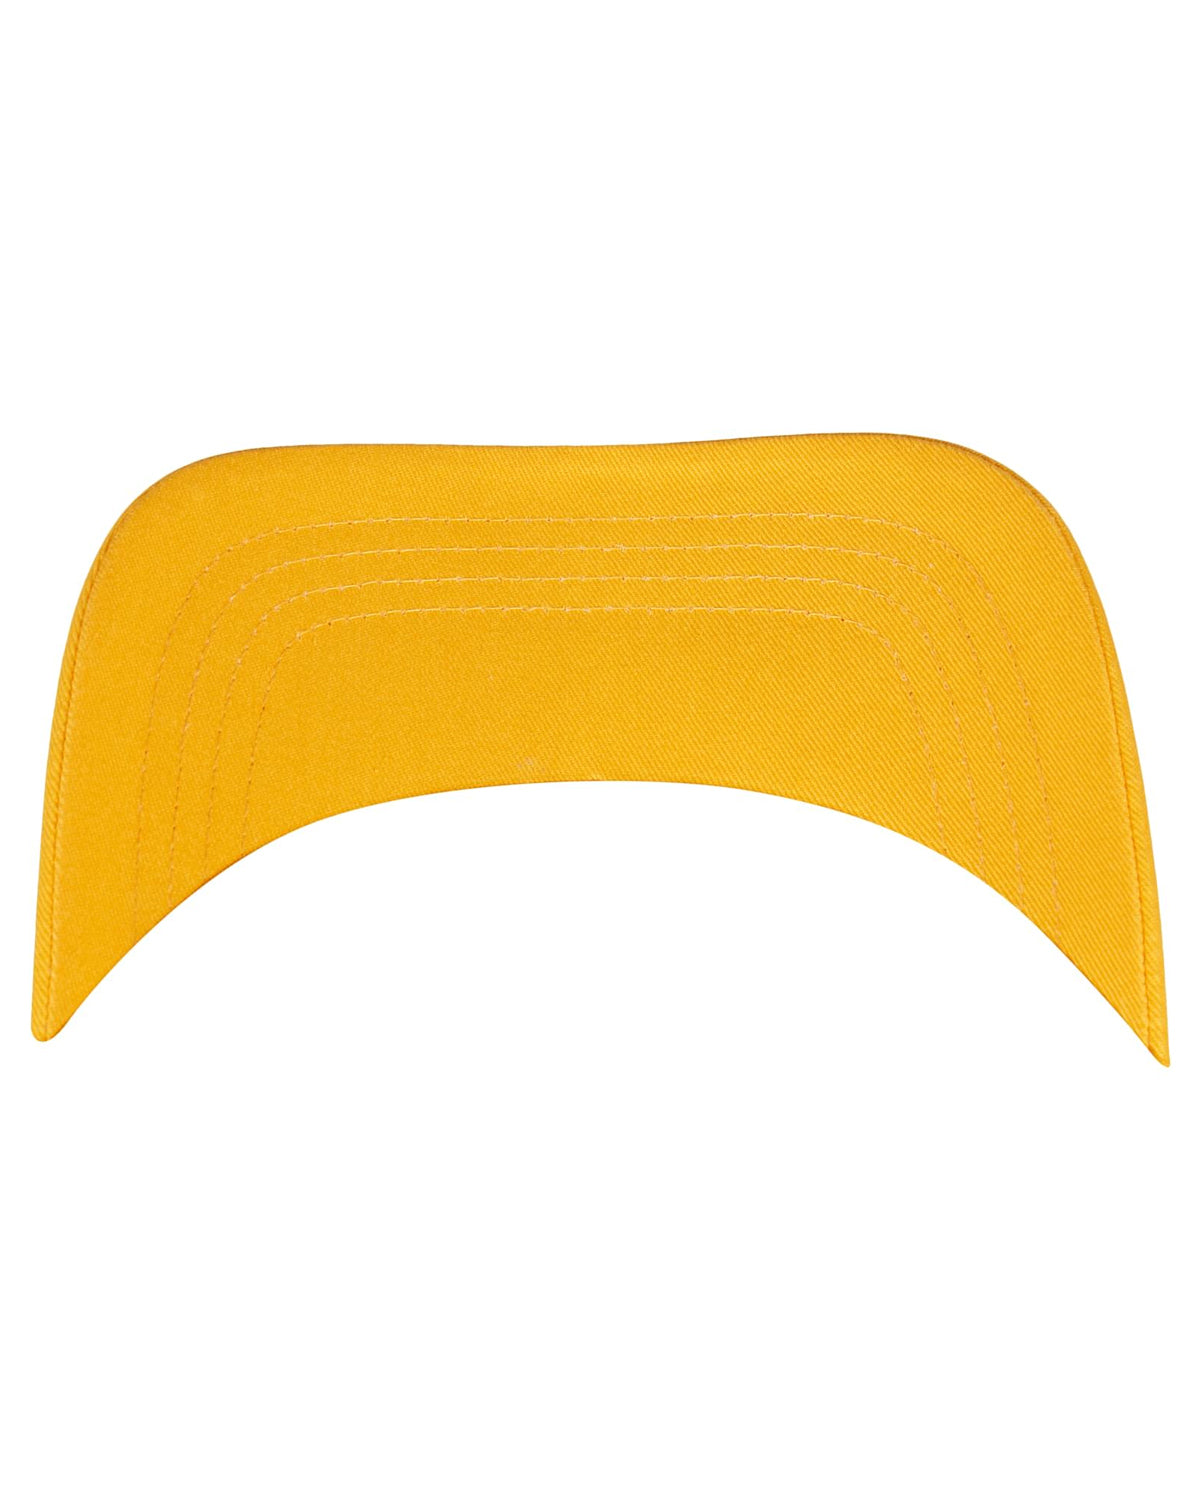 FLEXFIT Curved aurinkolippa - Keltainen